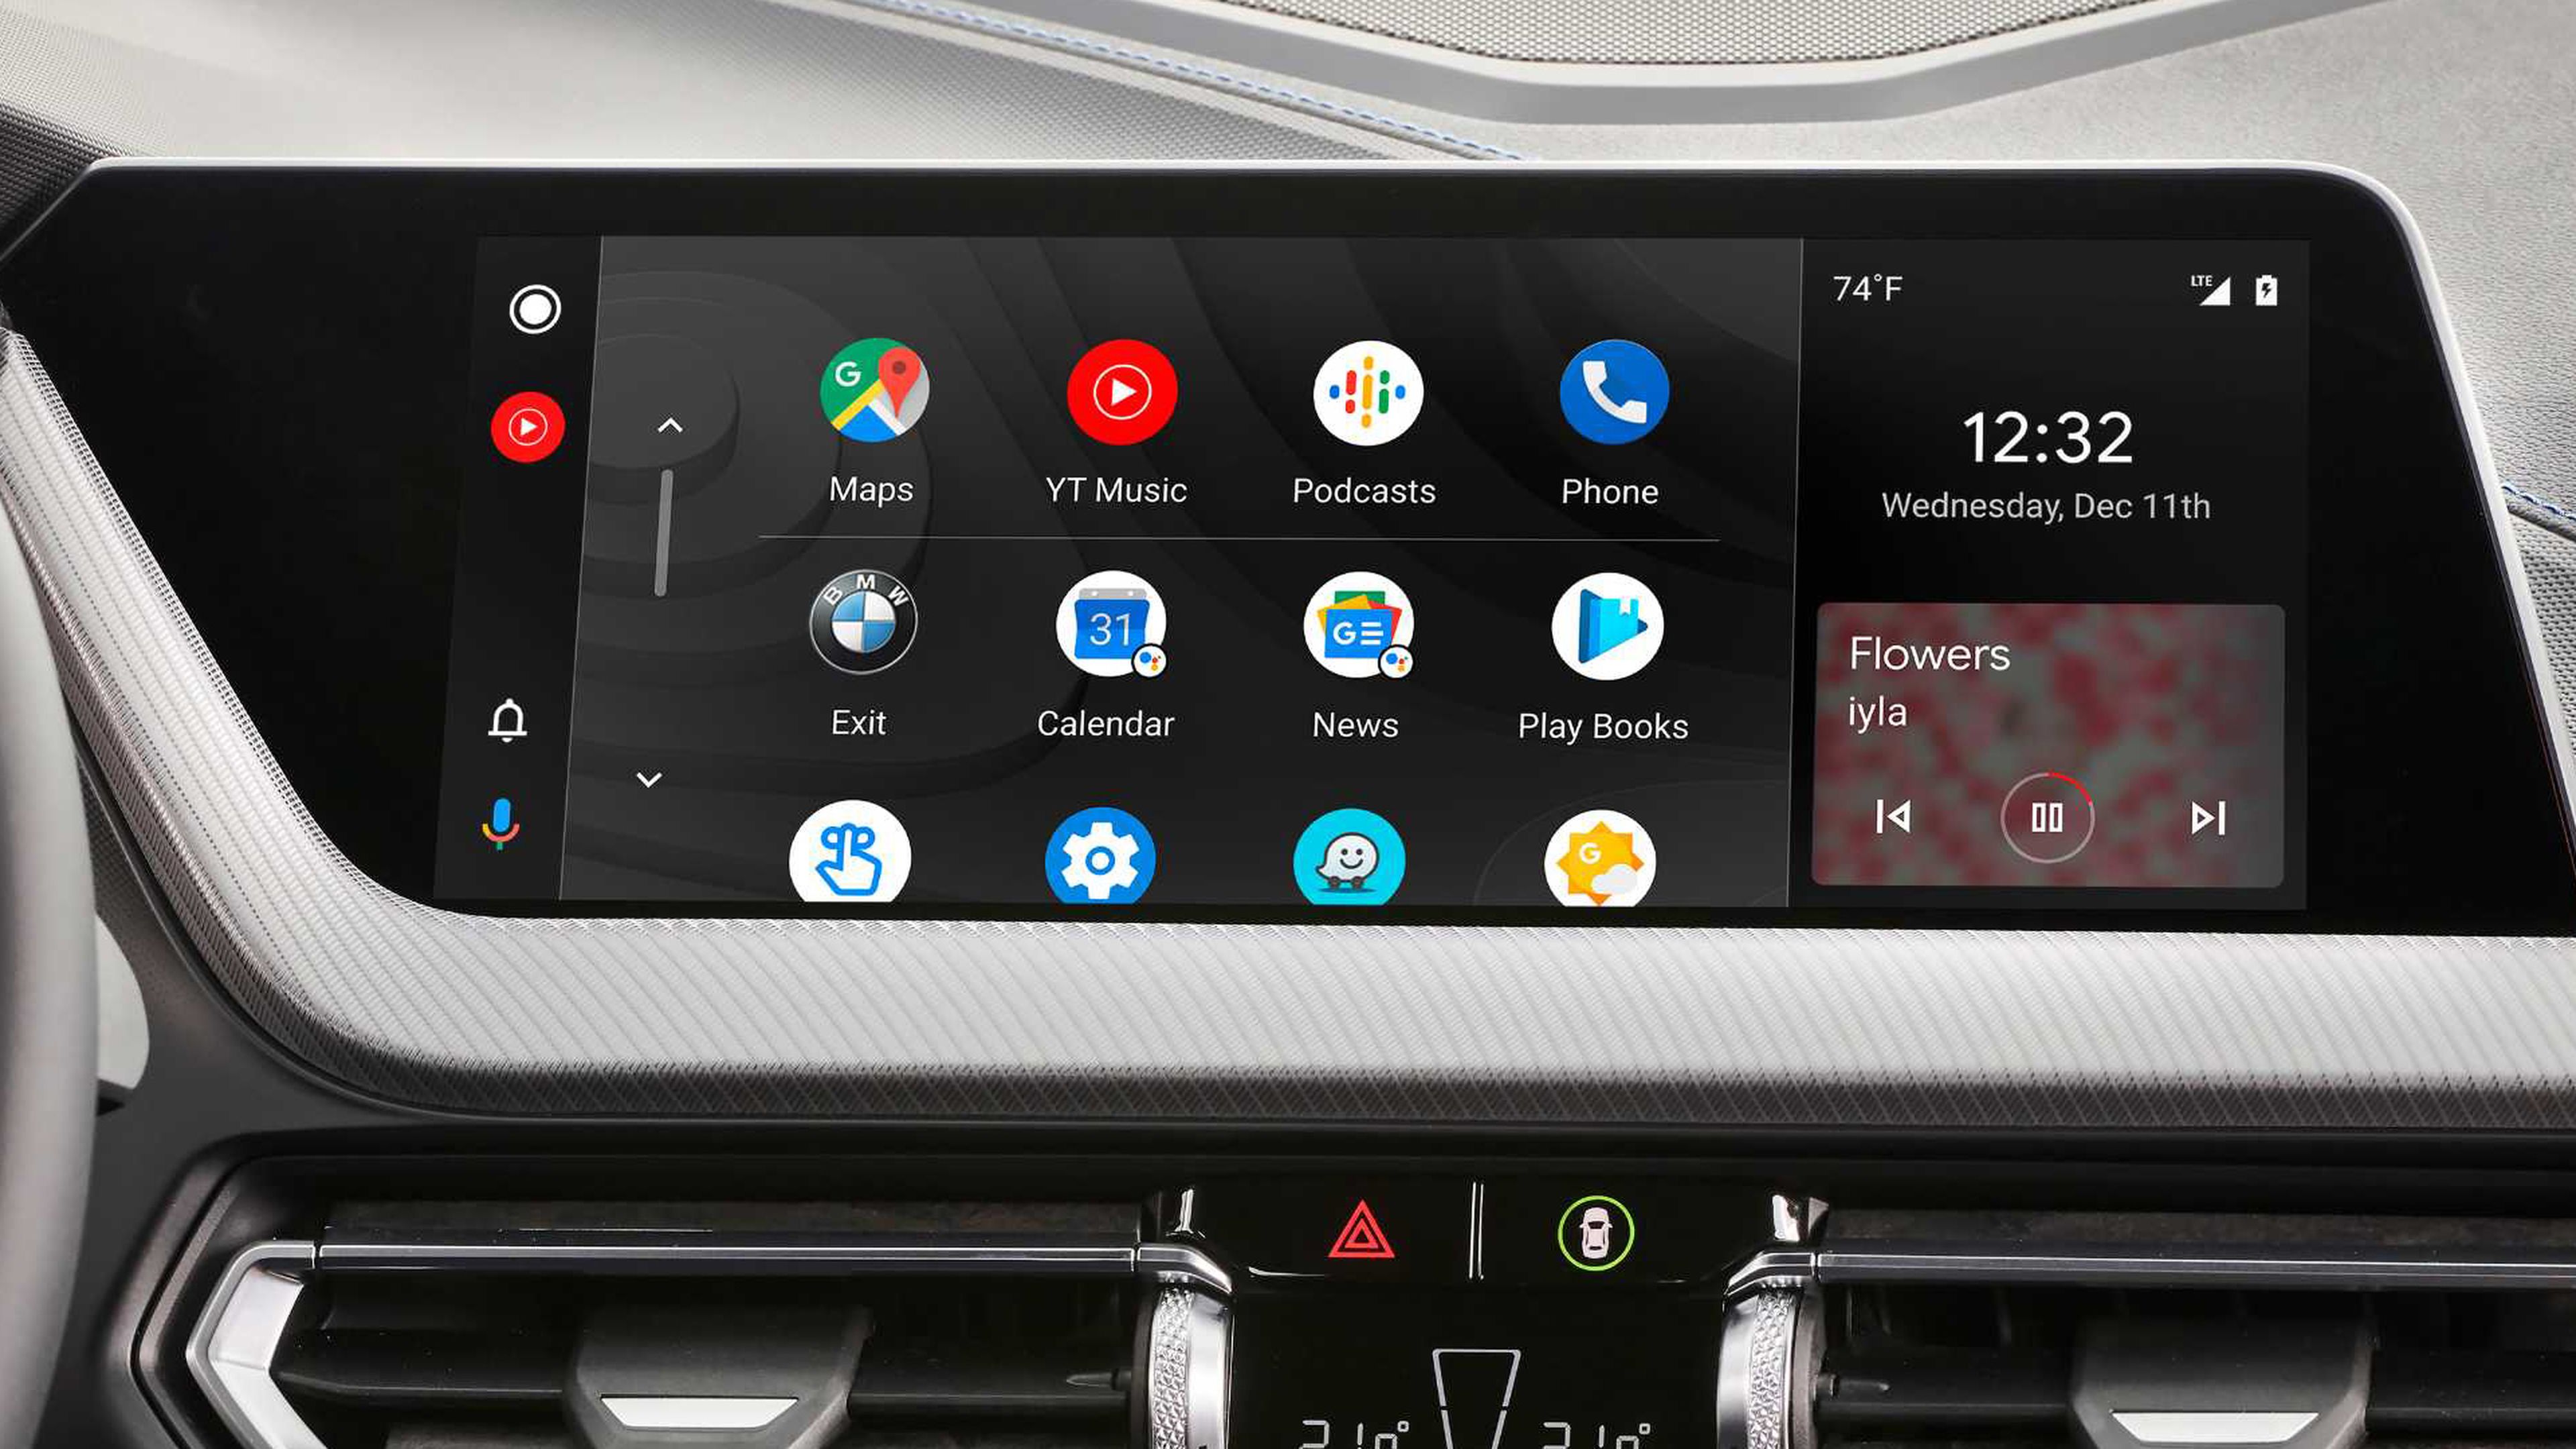 Sí, es posible instalar CarPlay en una tablet Android para usarla